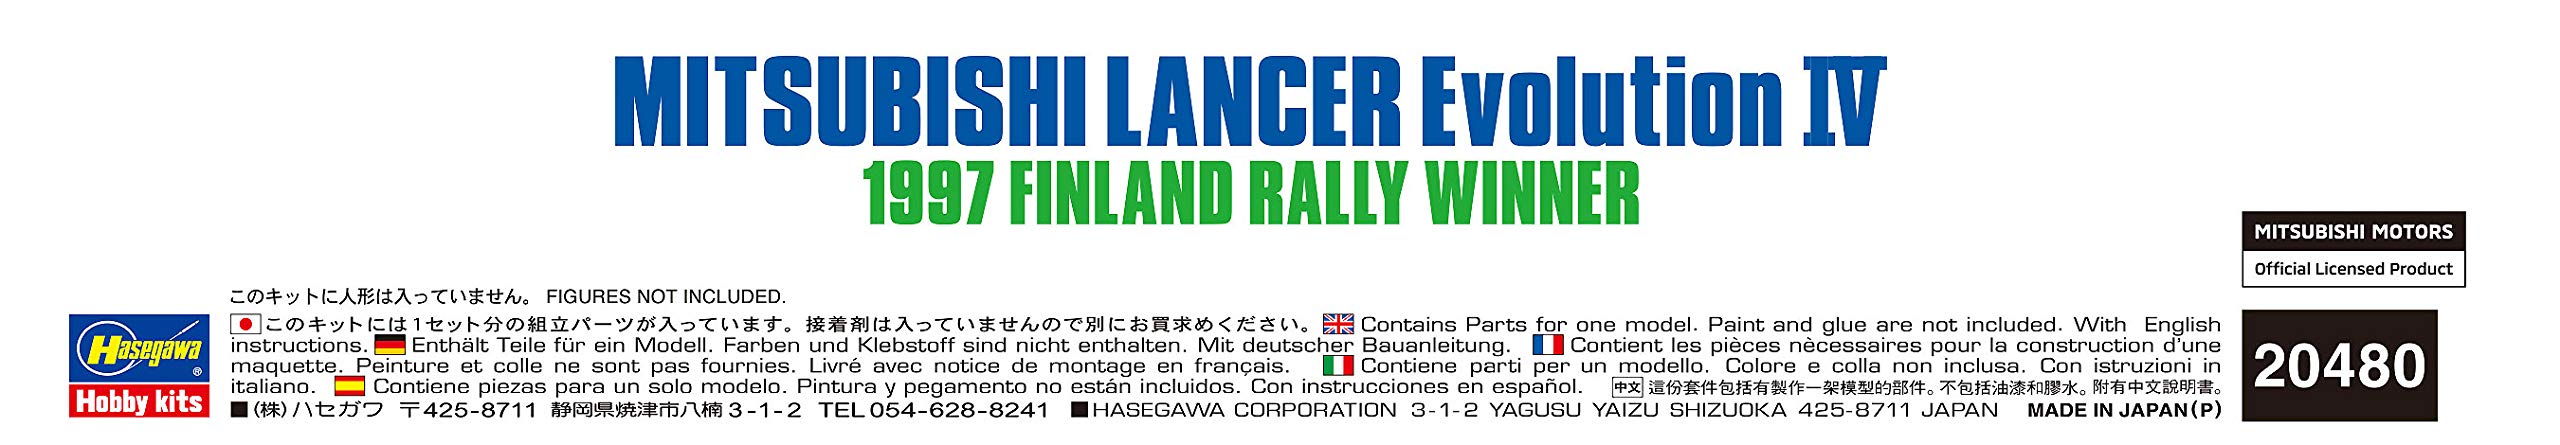 Hasegawa 1/24 Mitsubishi Lancer Evolution IV 1997 Finnland Rallye-Sieger Kunststoff-Rennwagen